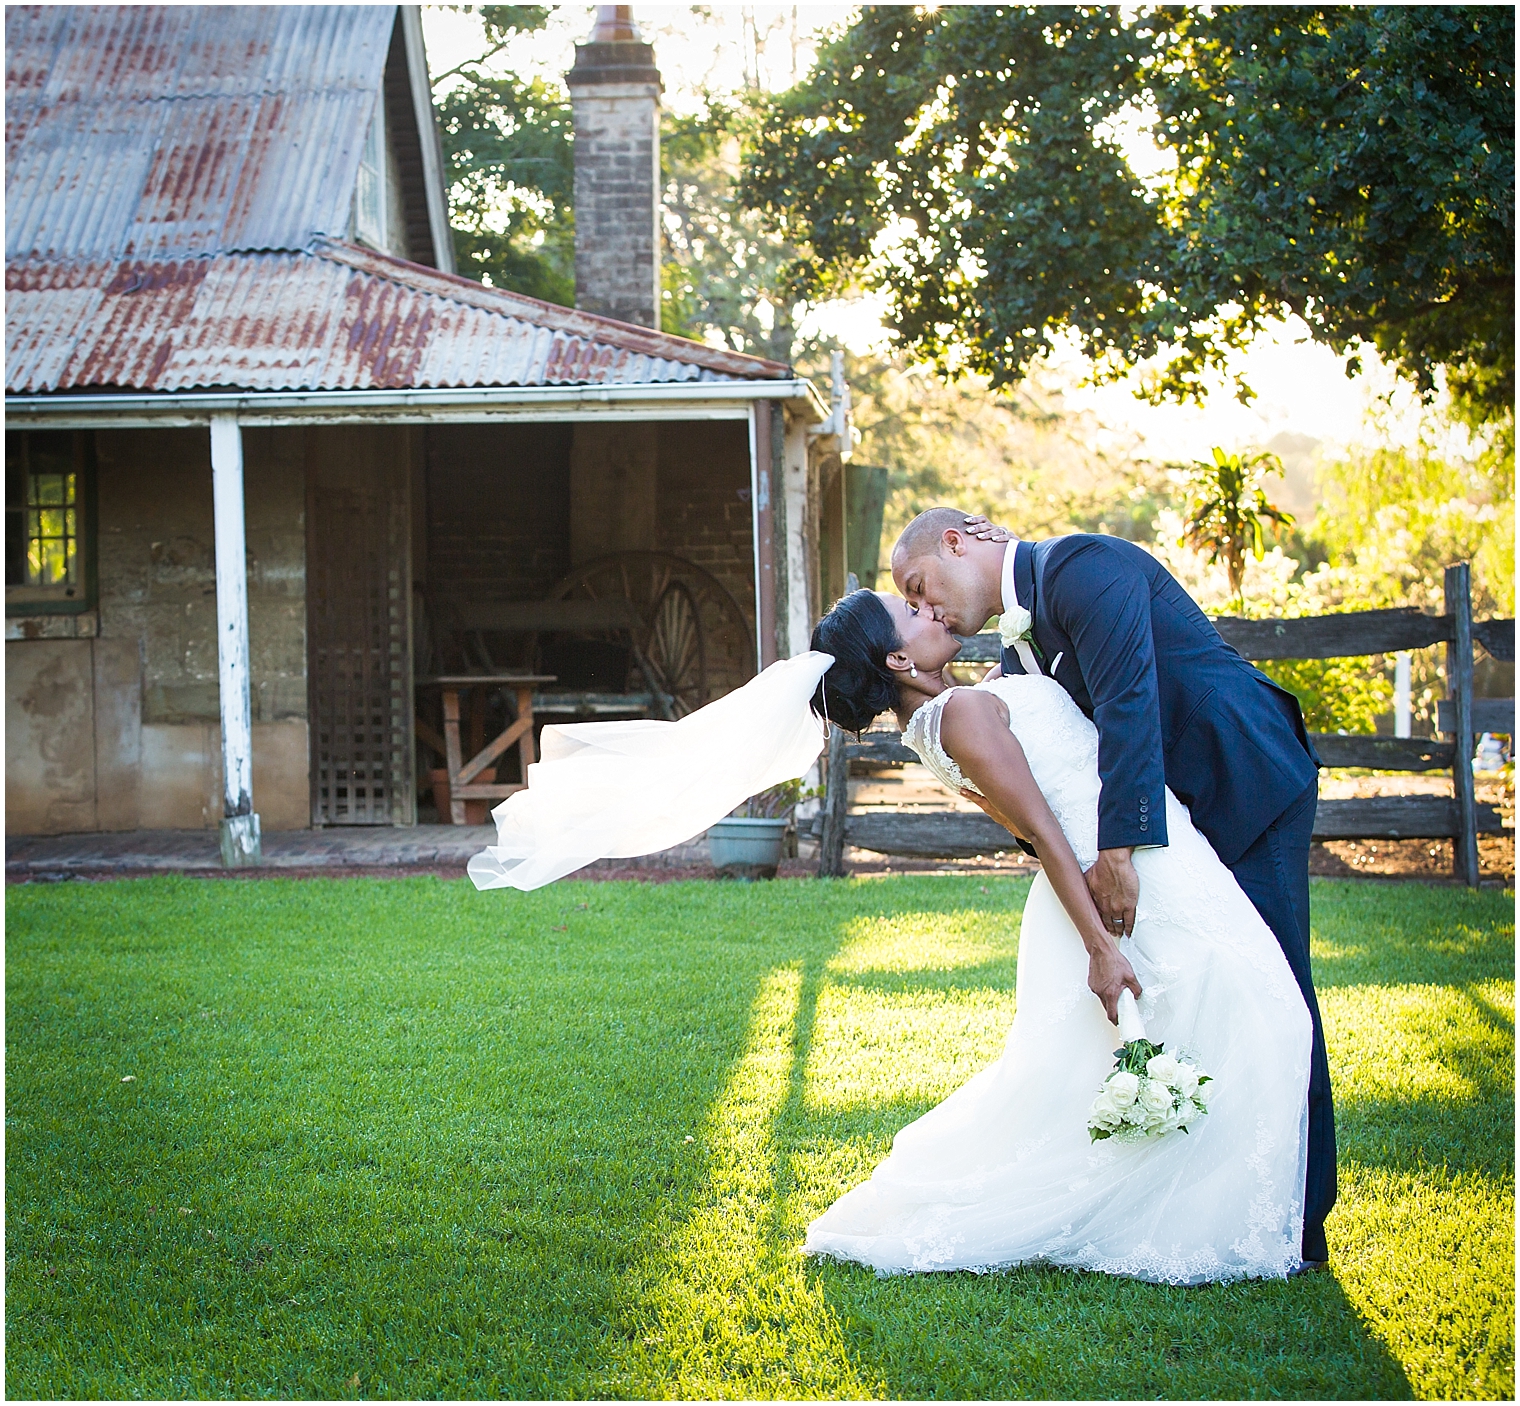 Sydney Wedding Photographer, Mr & Mrs, Bridal Couple